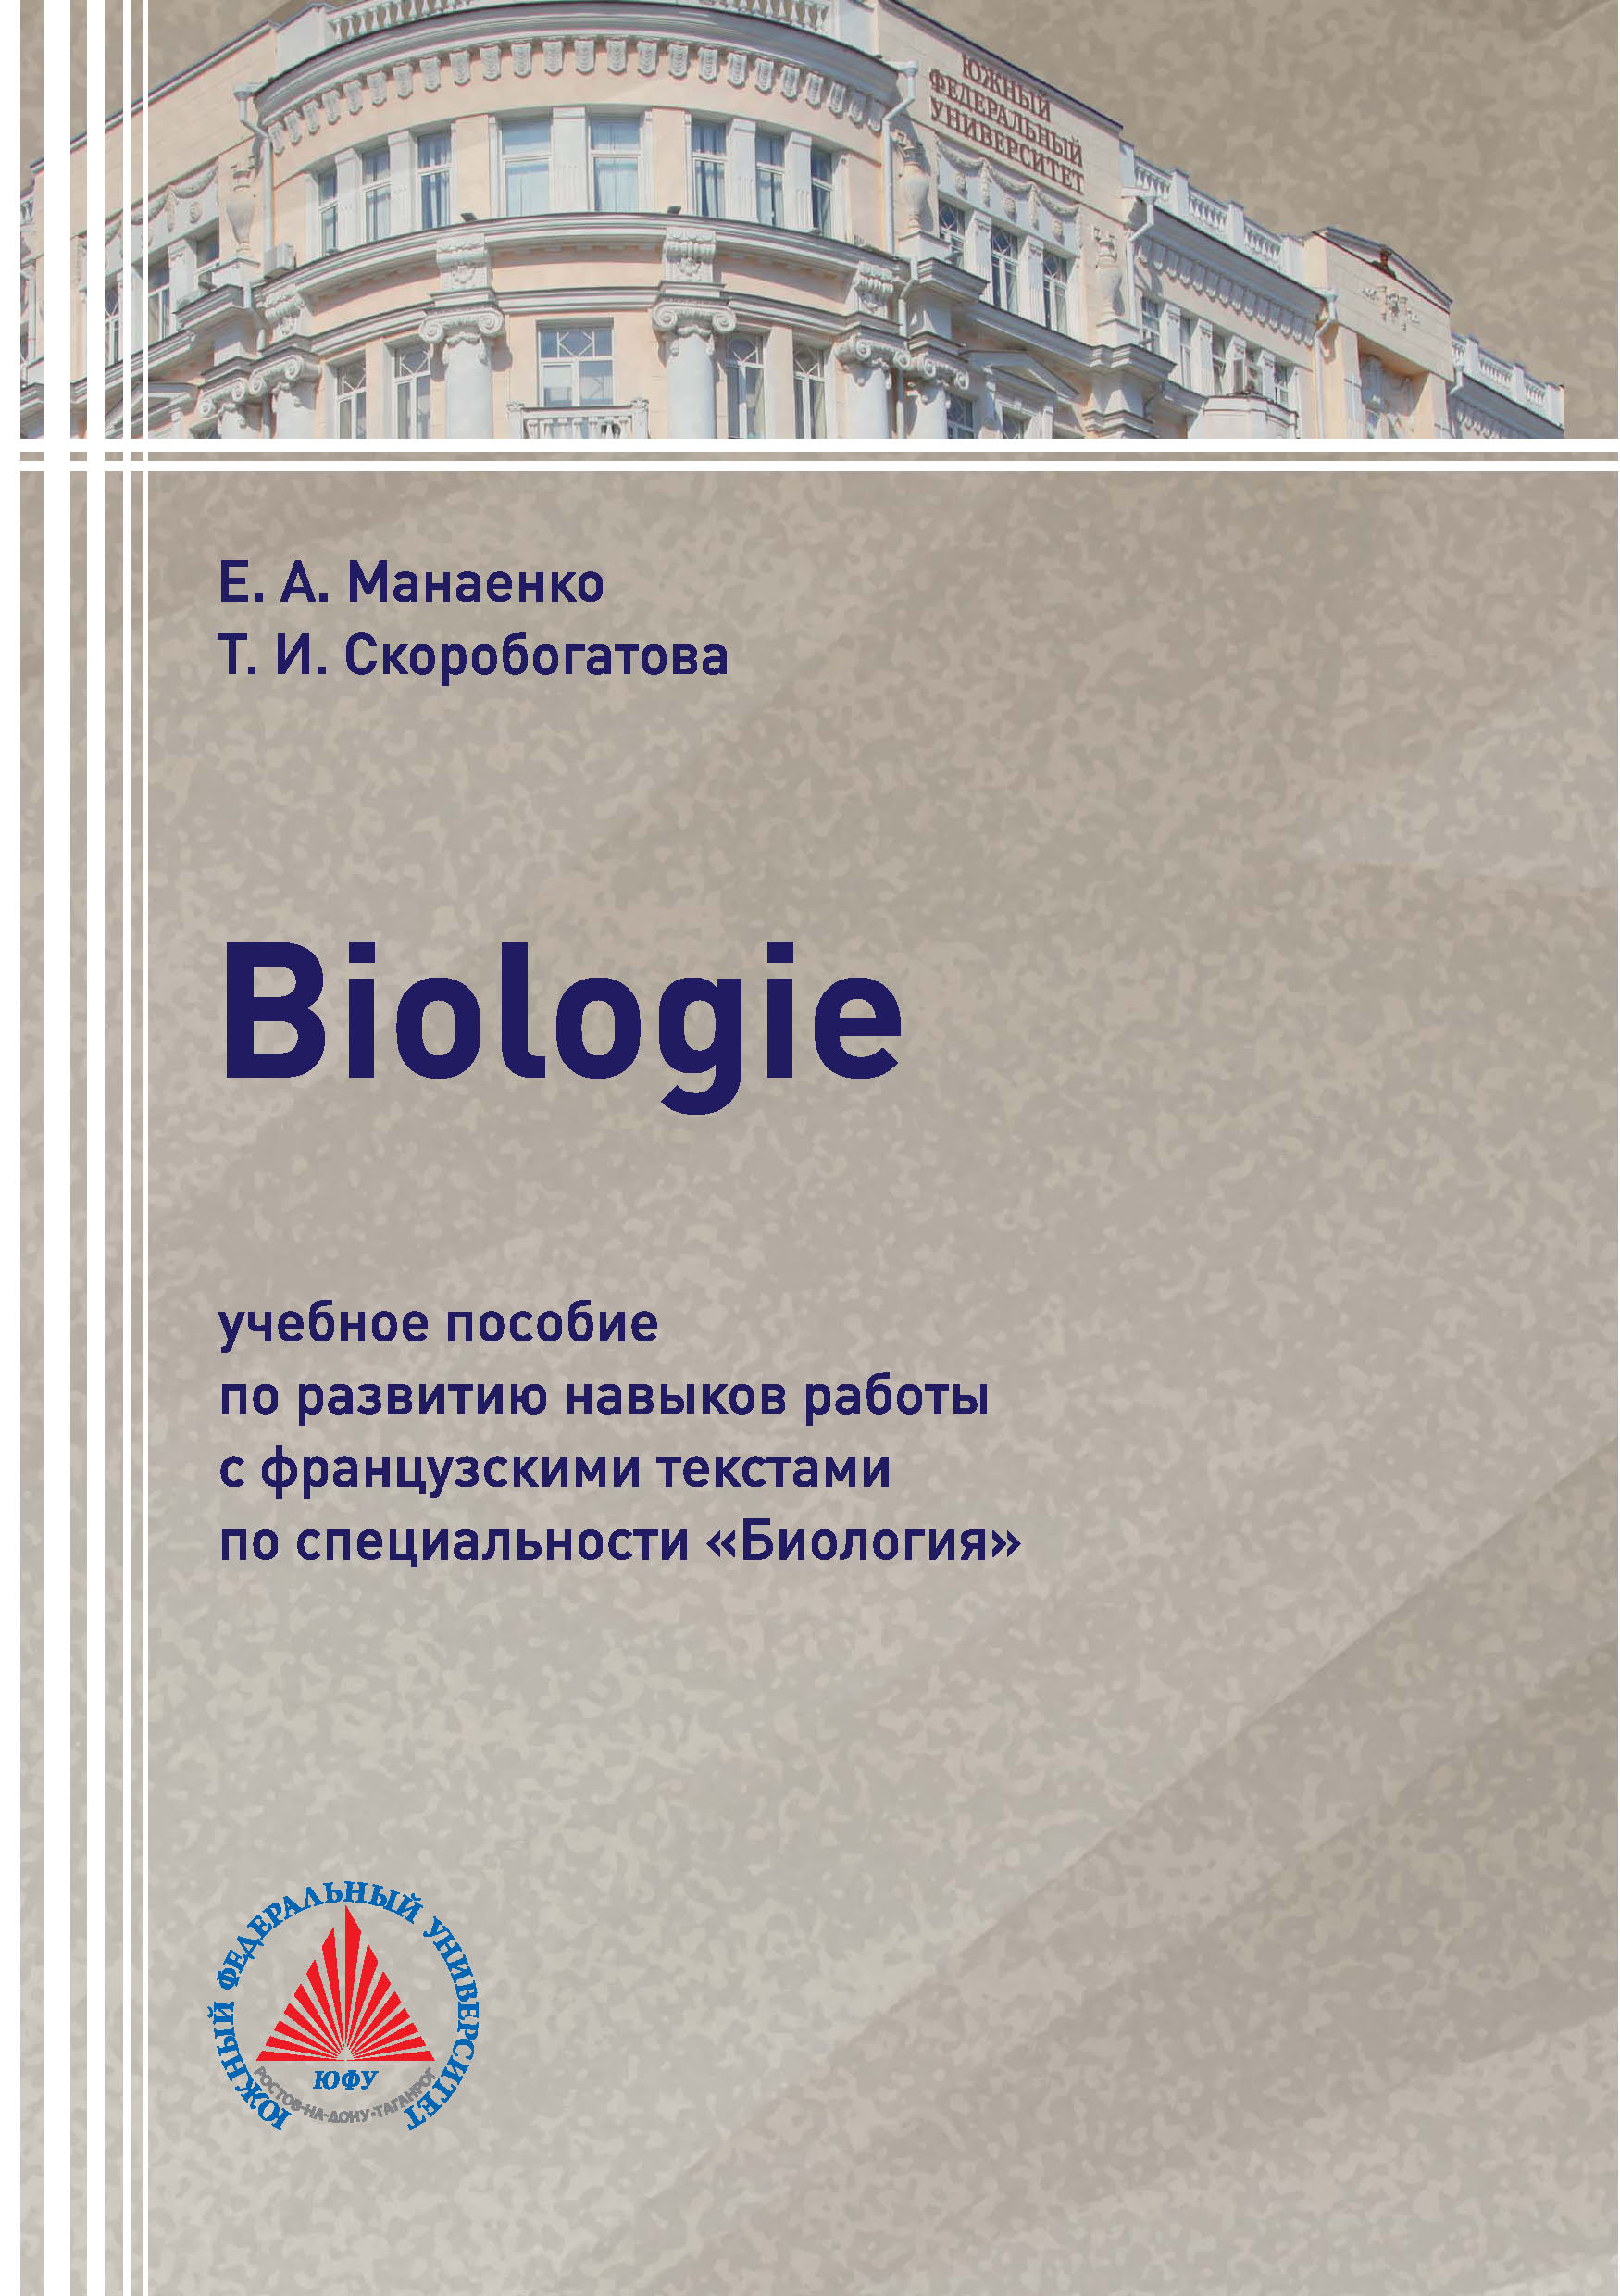 Biologie.Учебное пособие по развитию навыков работы с французскими текстами по специальности «Биология»